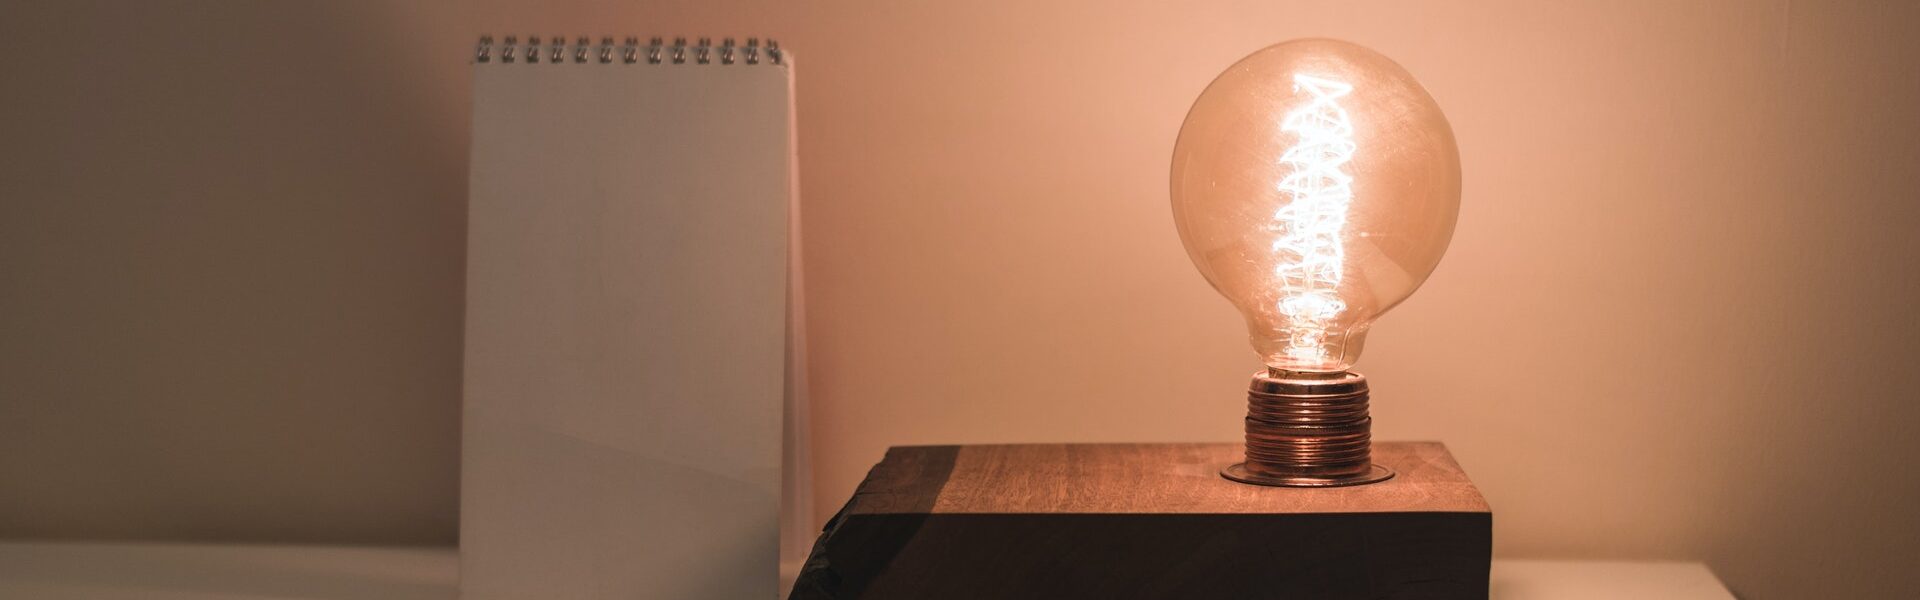 lampada led - Como Economizar Energia Elétrica? Dicas práticas e úteis para economizar energia